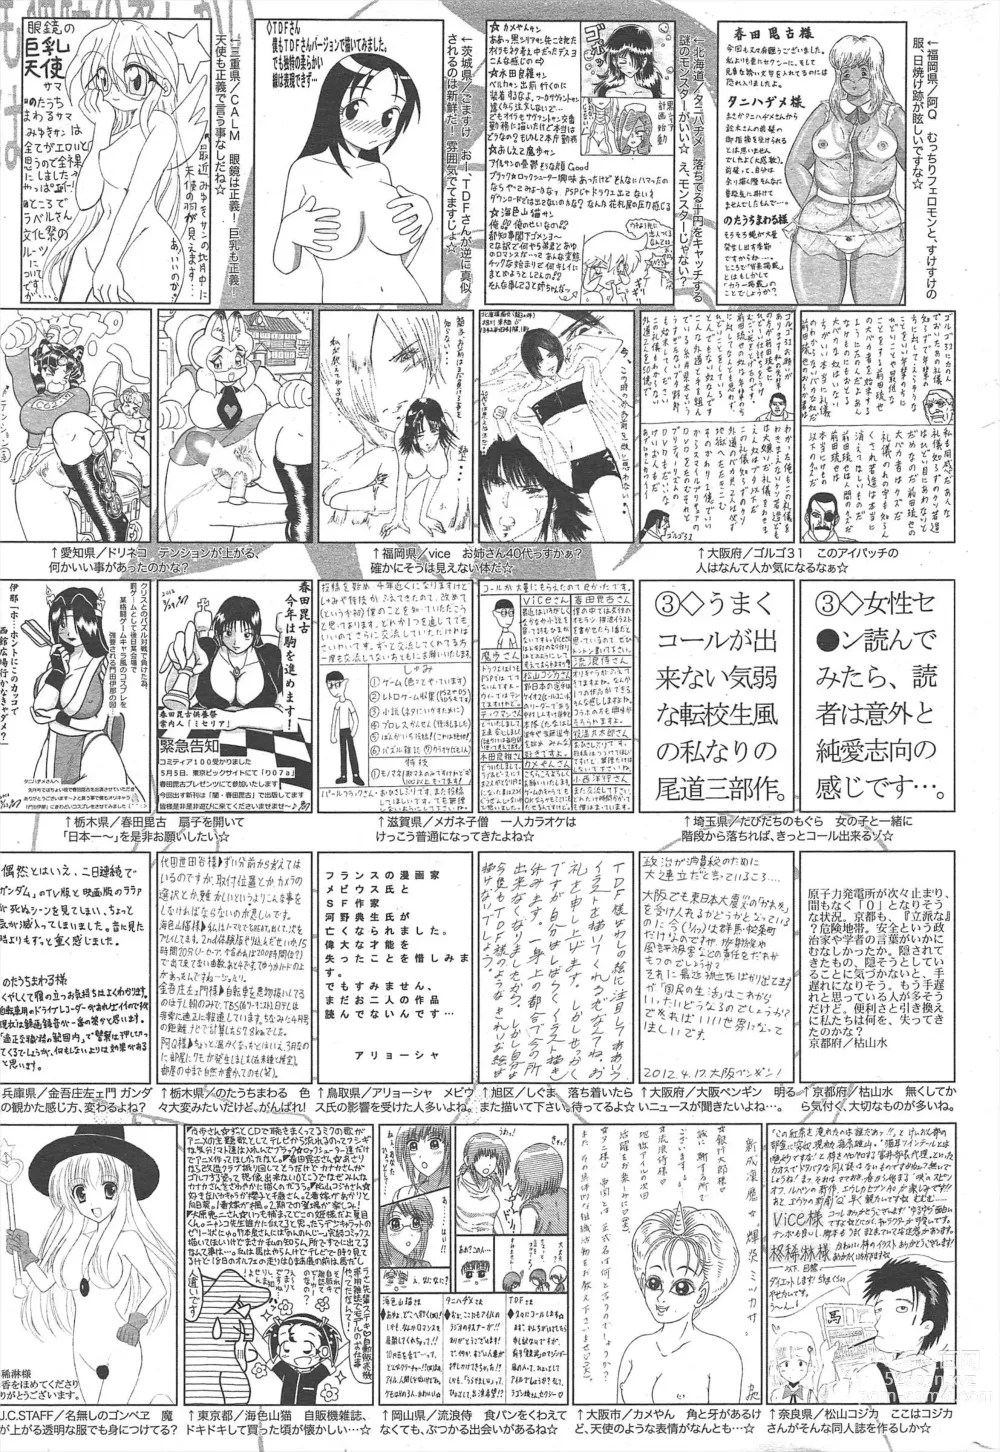 Page 323 of manga Manga Bangaichi 2012-06